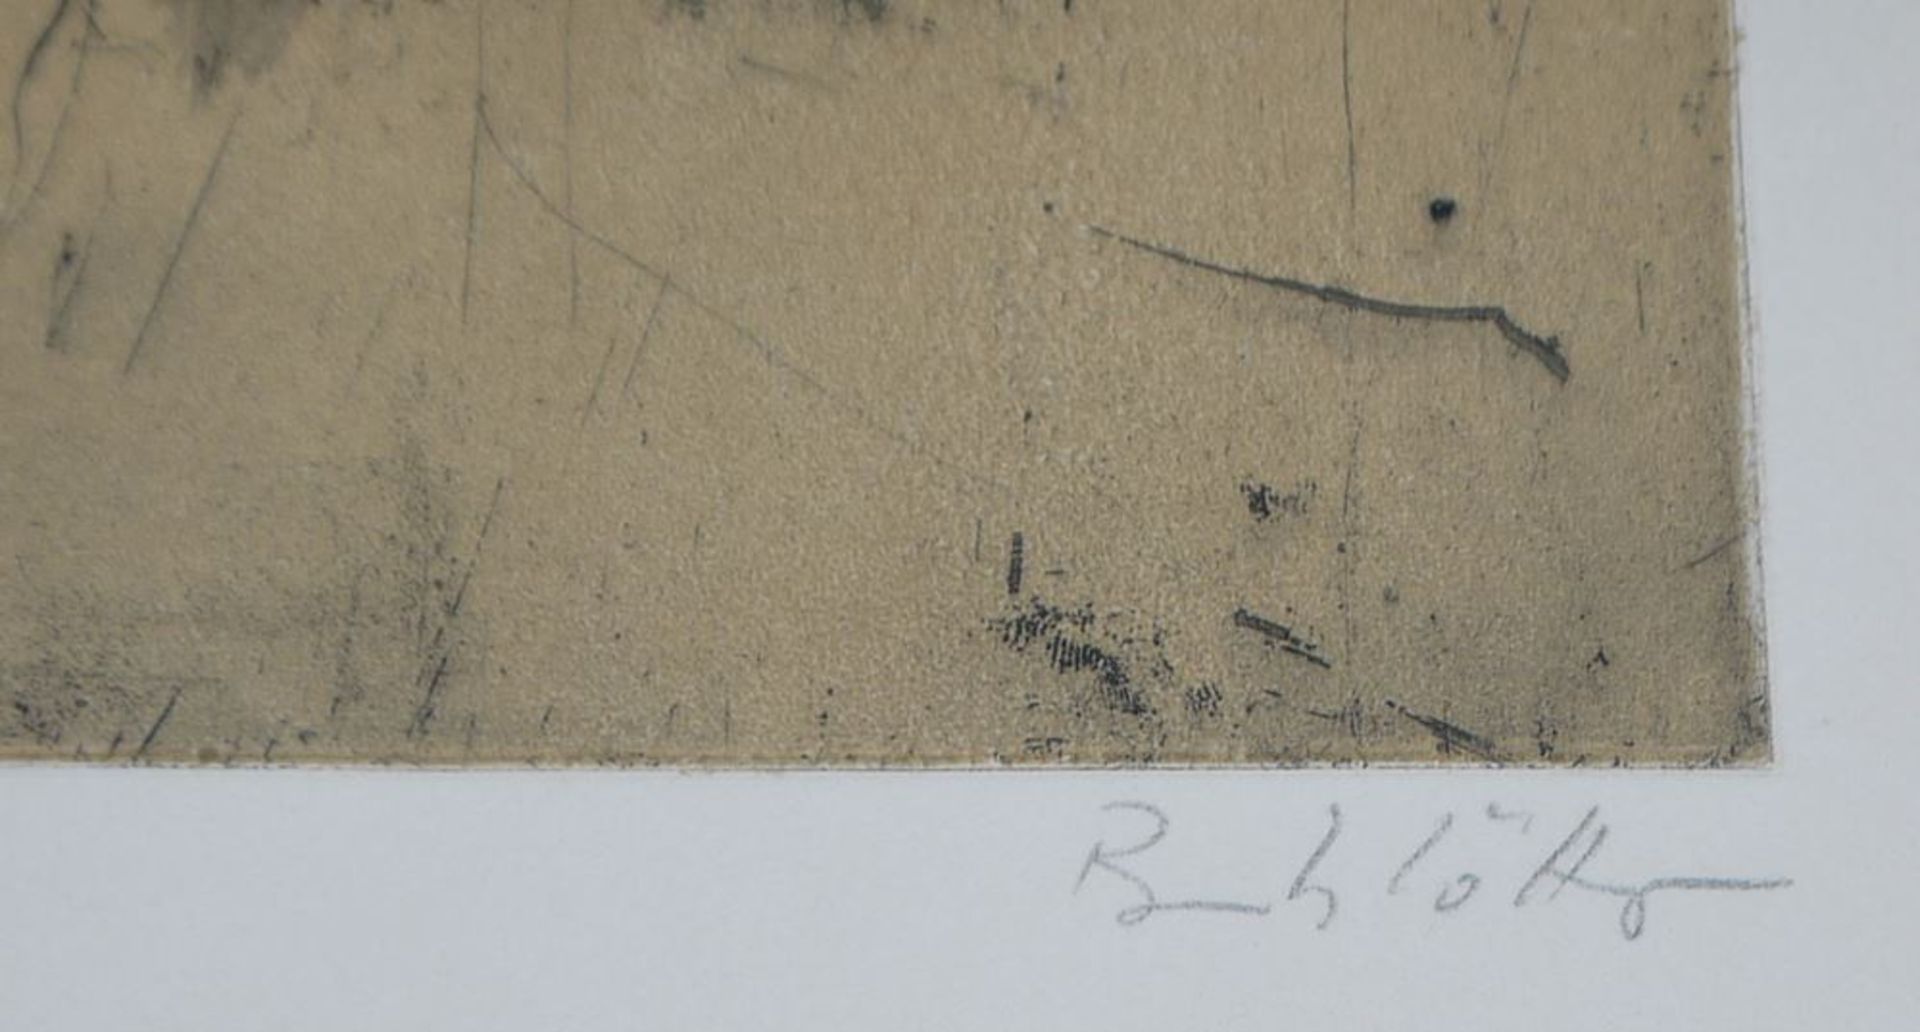 Karl Brandstätter, Nudes, 3 signed aquatint etchings - Image 4 of 4